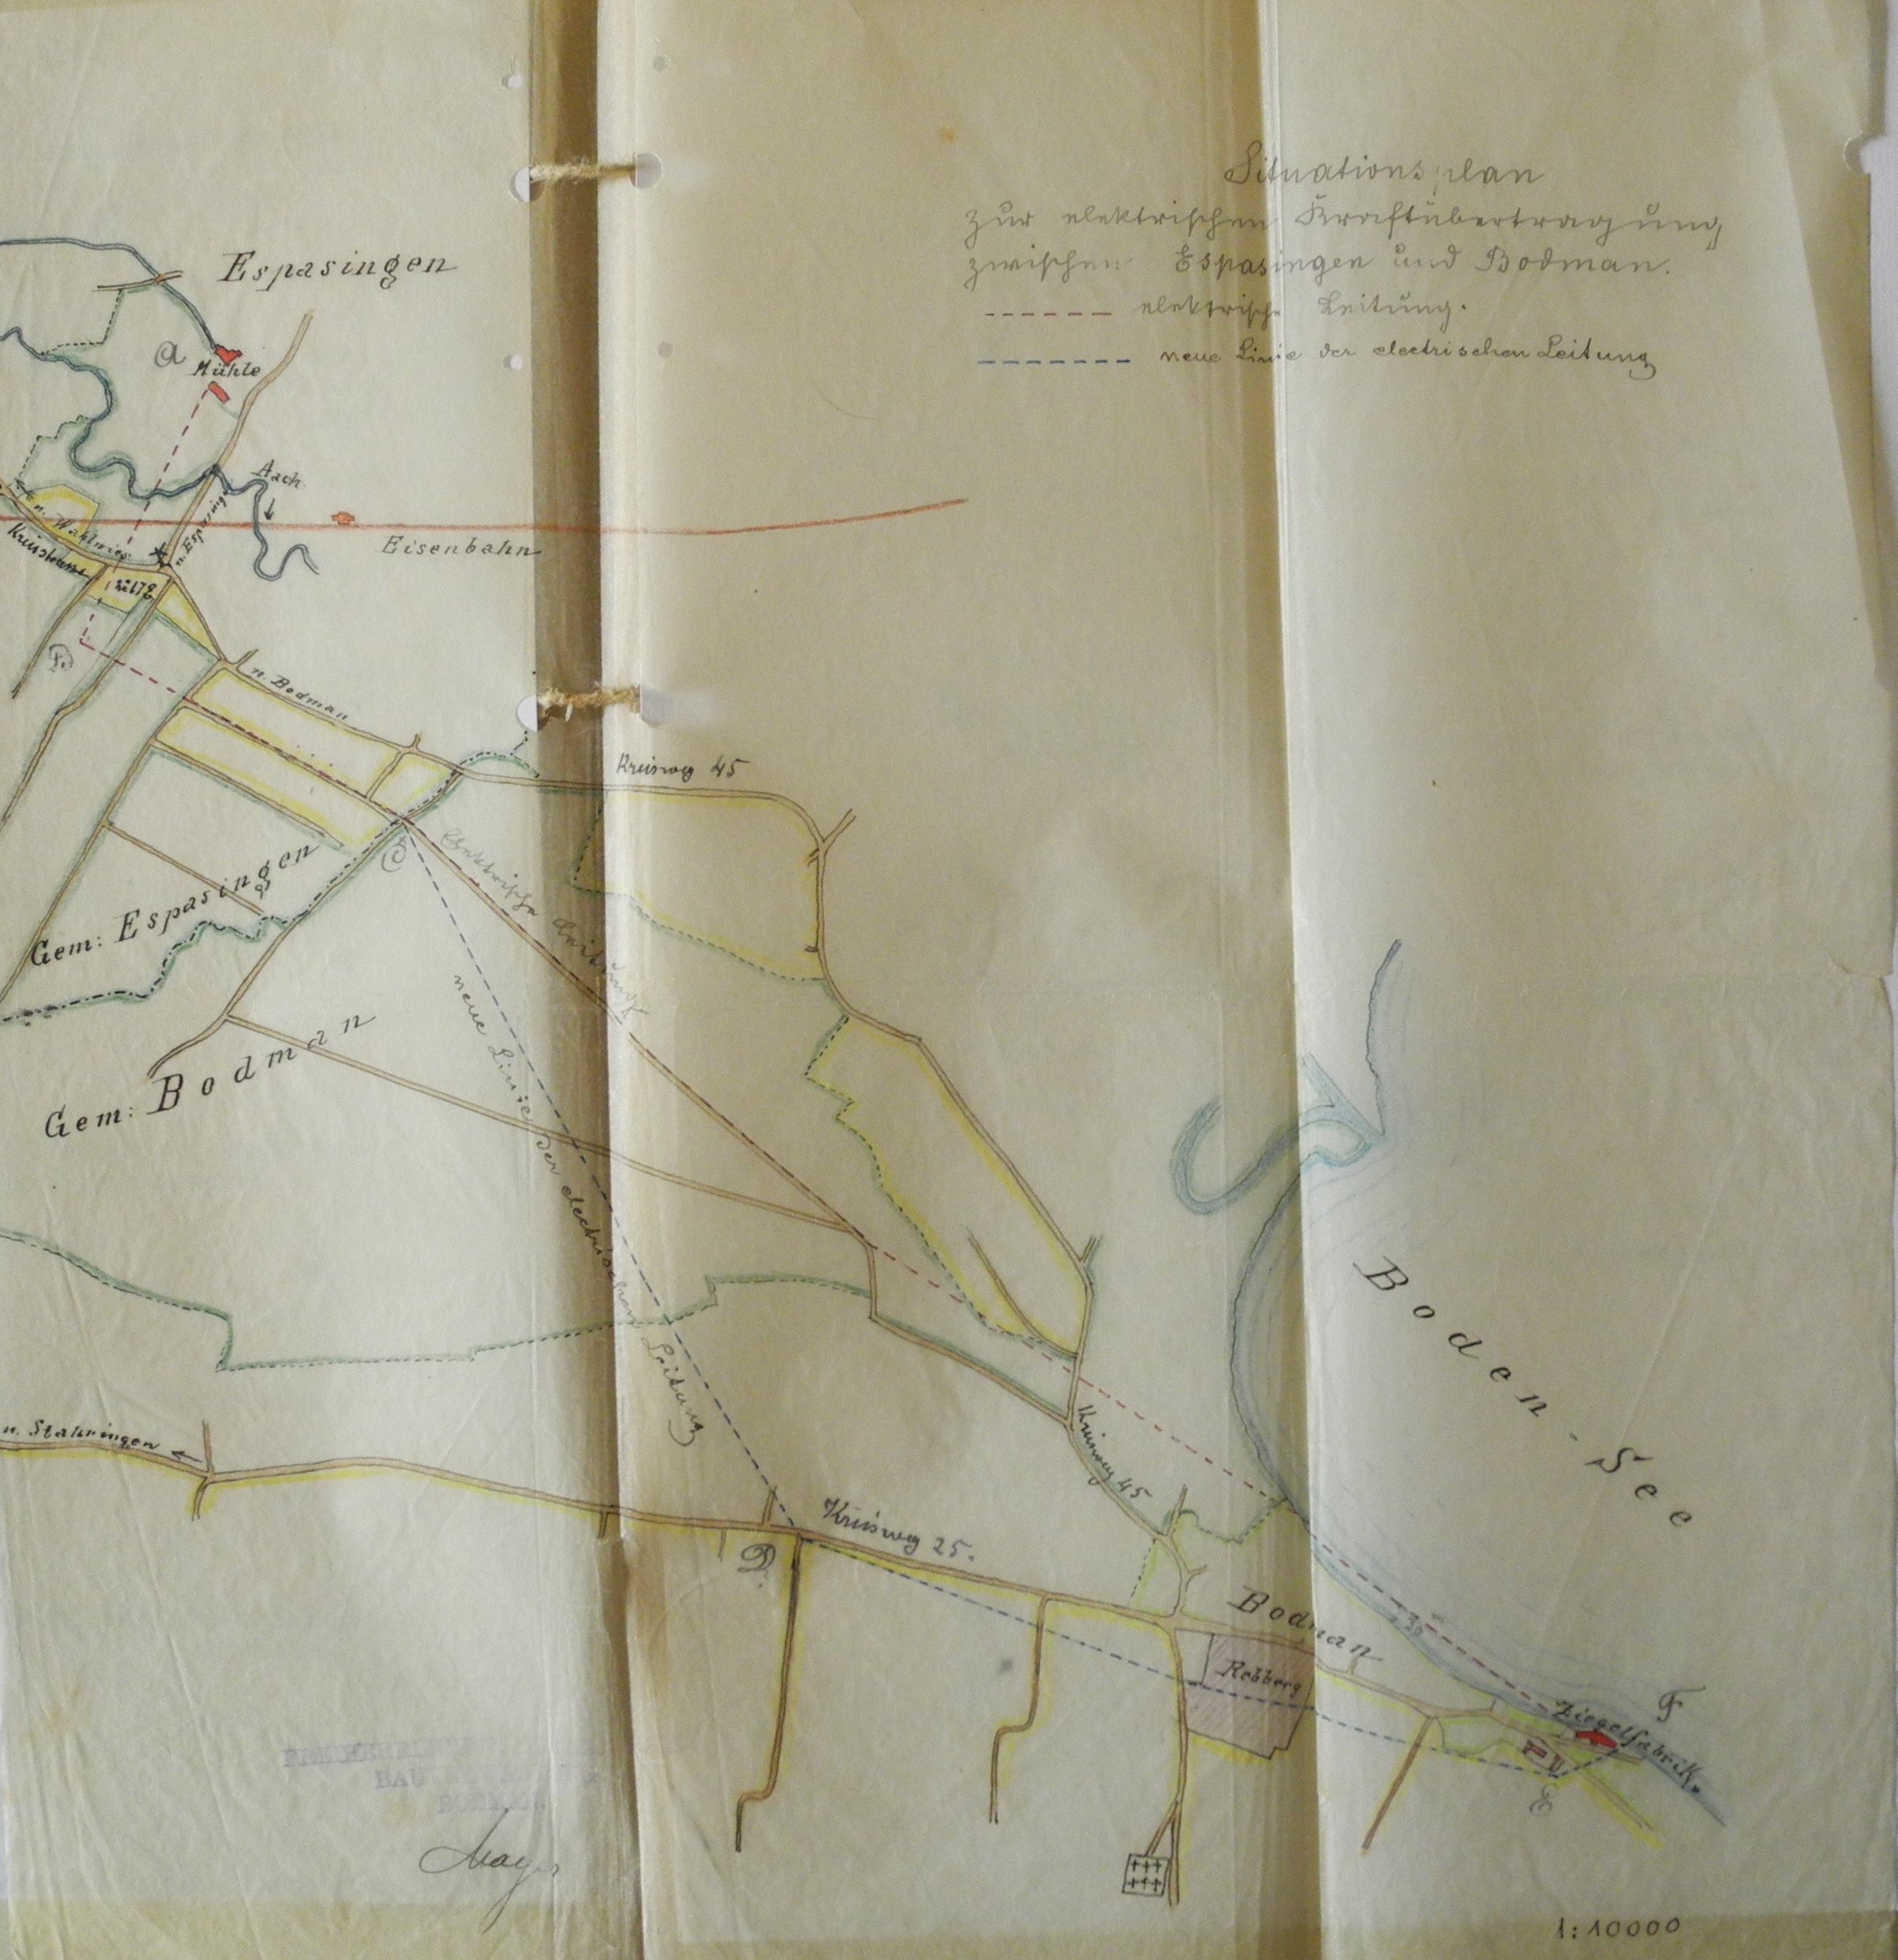  Plan für verschiedene Routen der Stromleitung zwischen Espasingen und Bodman ca. 1898, Gräflich Bodmansches Archiv, A 1286 